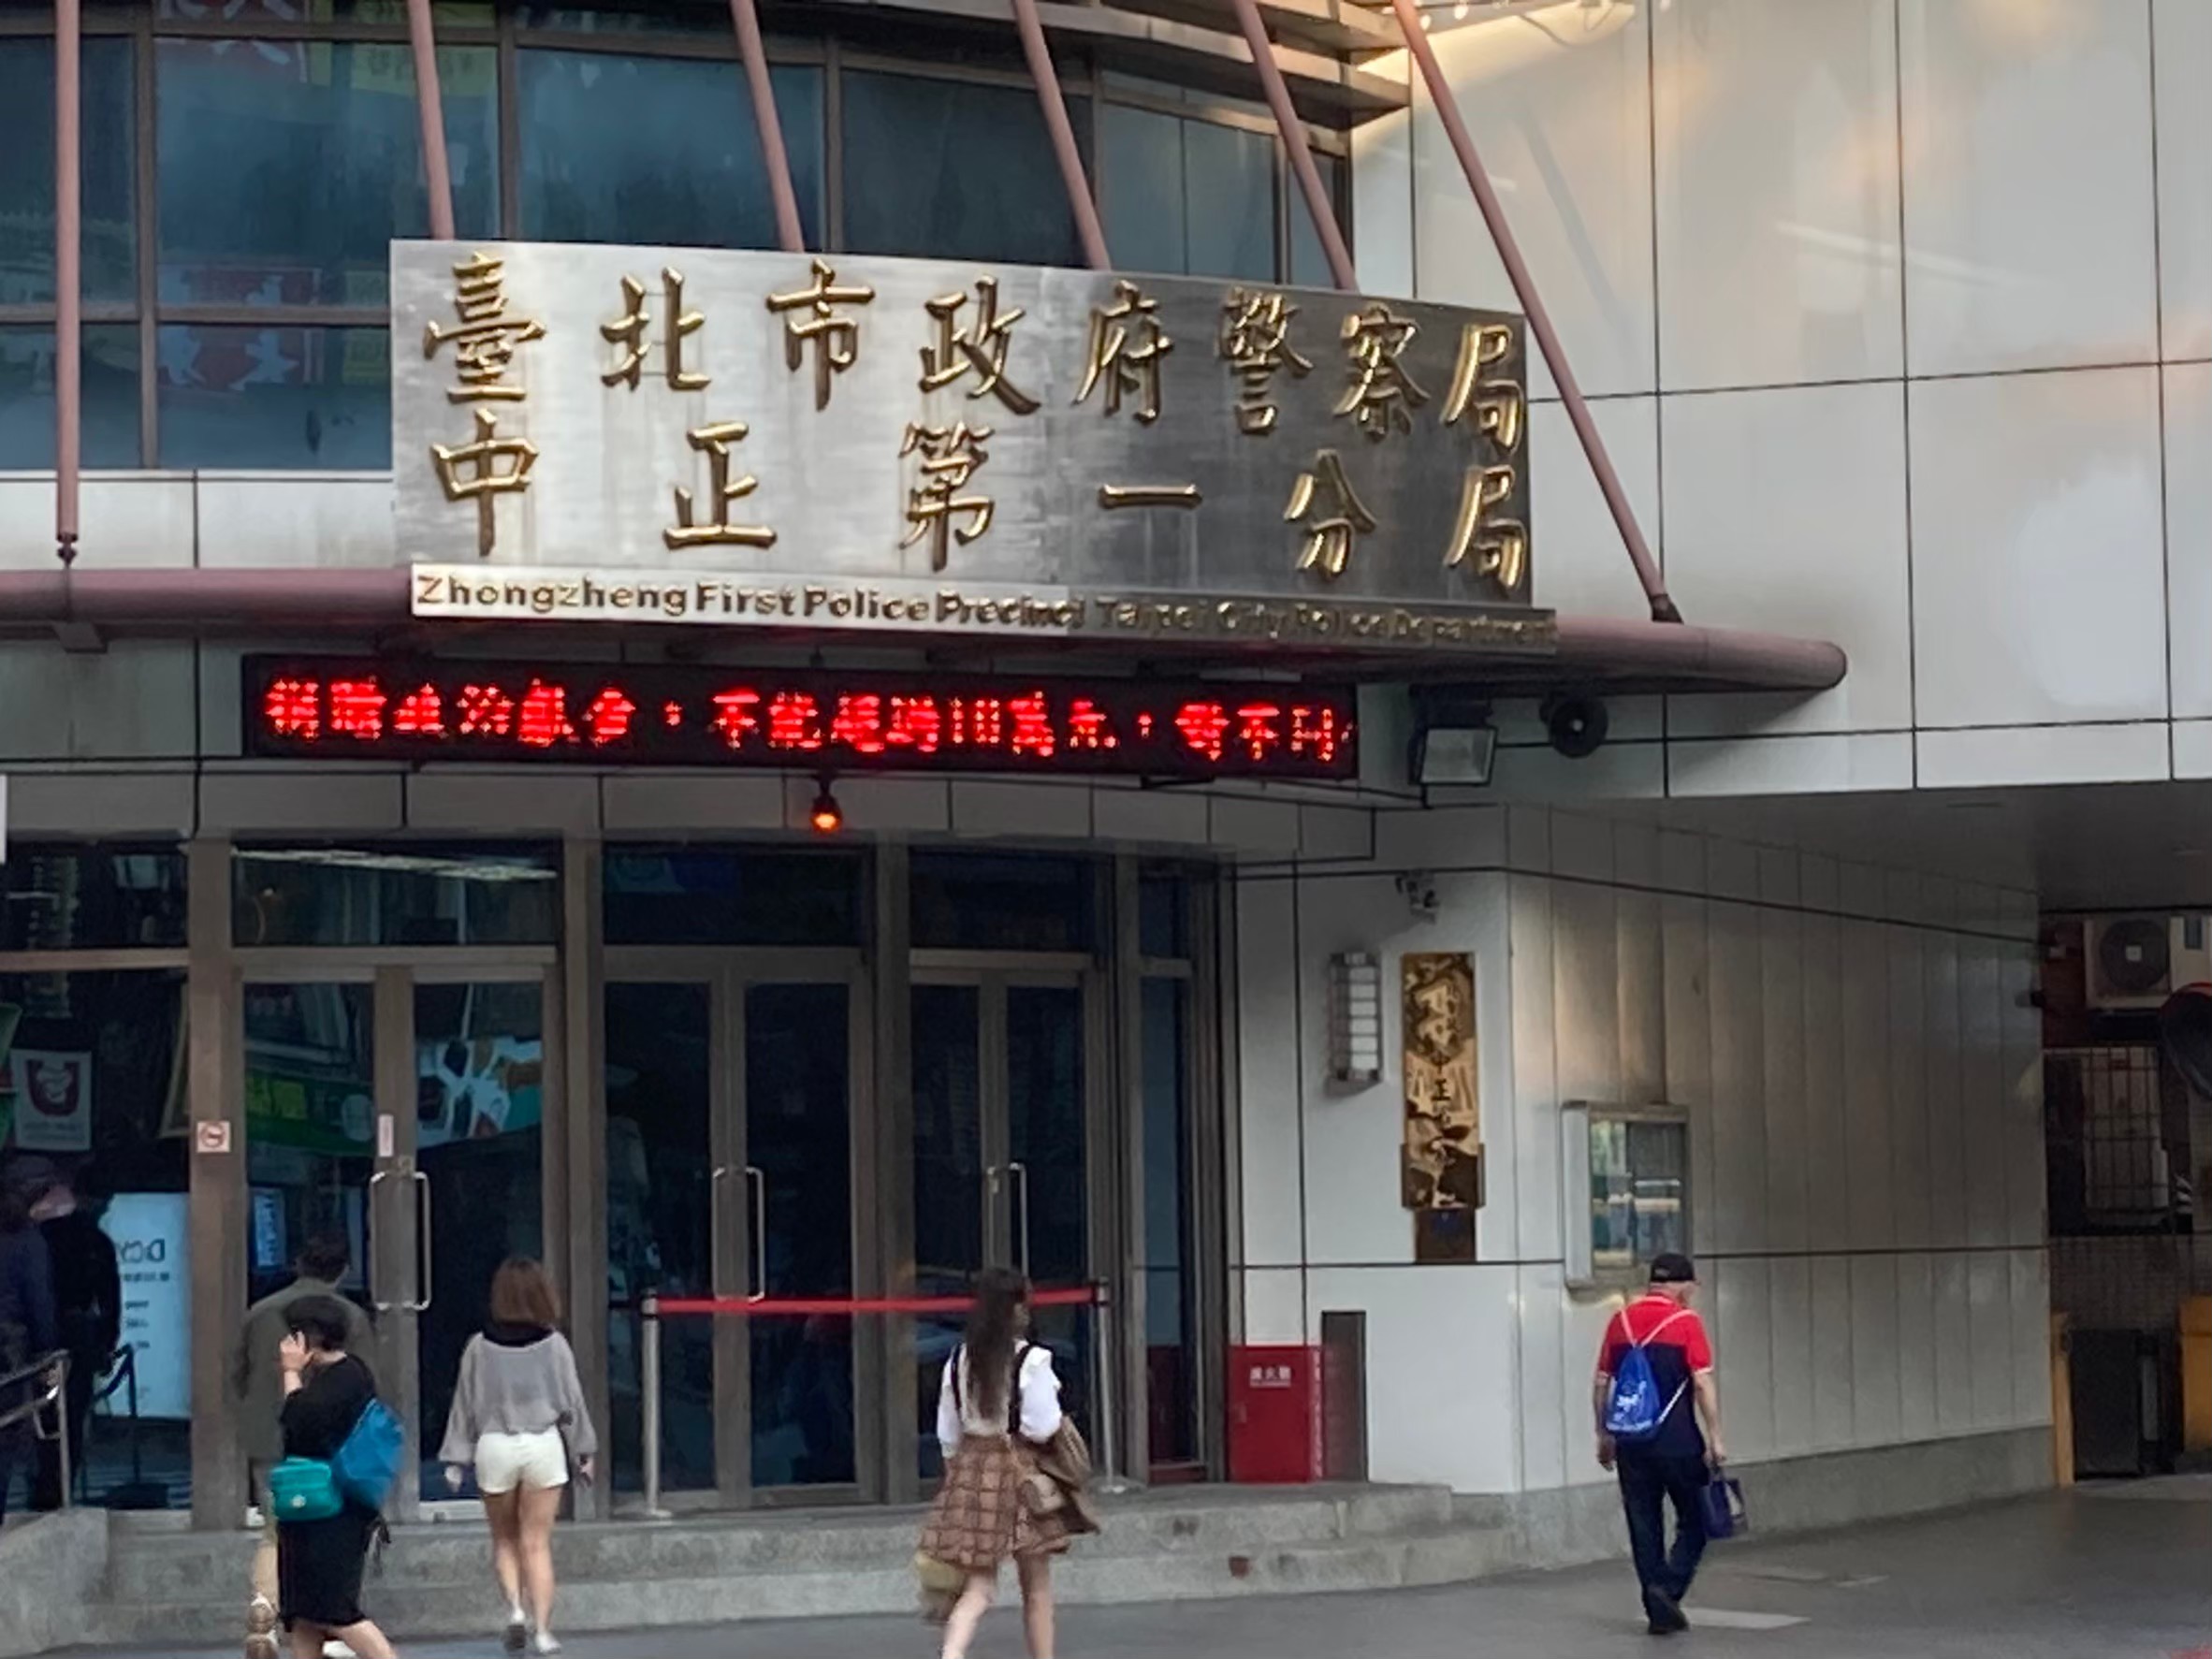 台北市中正一警分局忠孝西路派出所徐姓警员，今天中午在分局地下停车场开枪，头部中弹送医不治。图/记者翁至成摄影